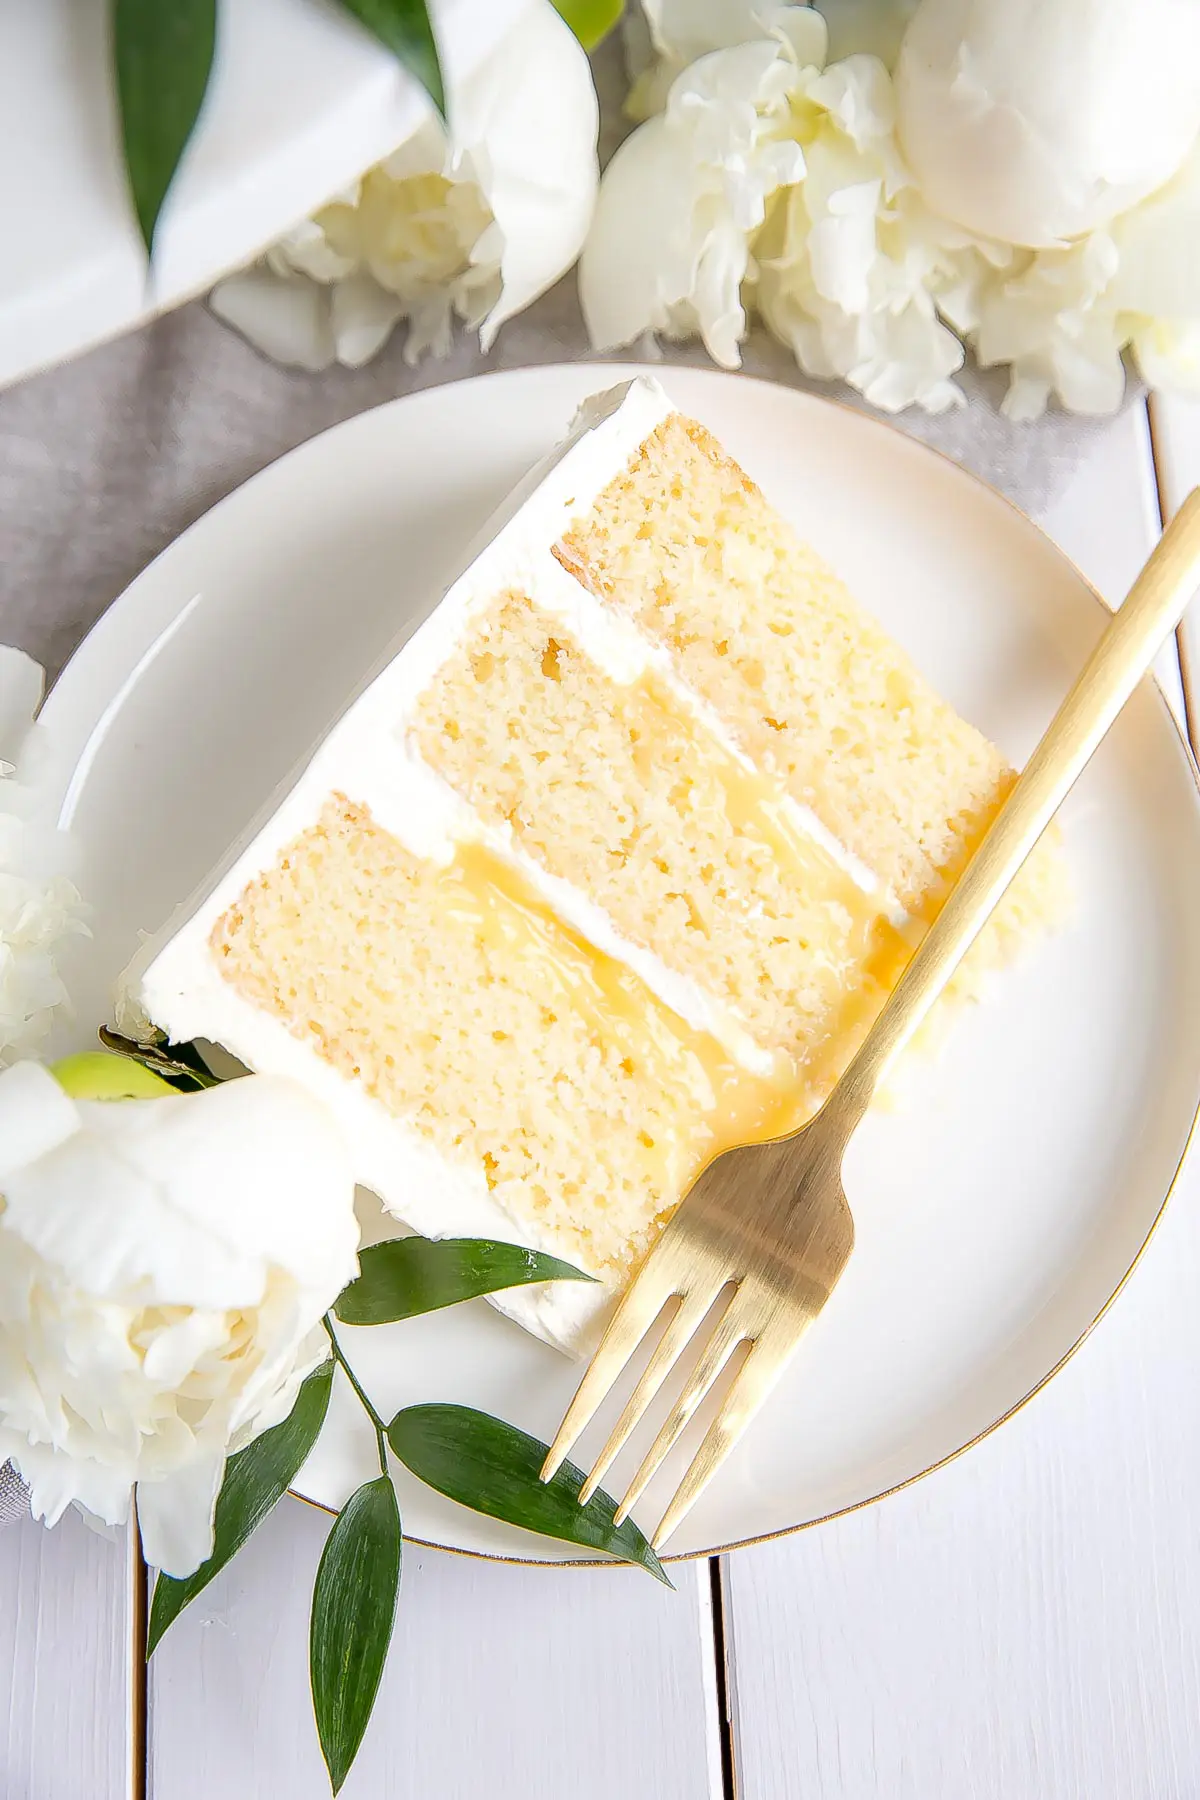 Slice of Lemon Elderflower Cake, copycat royal wedding cake! Elderflower infused lemon cake layers with lemon curd and elderflower buttercream.